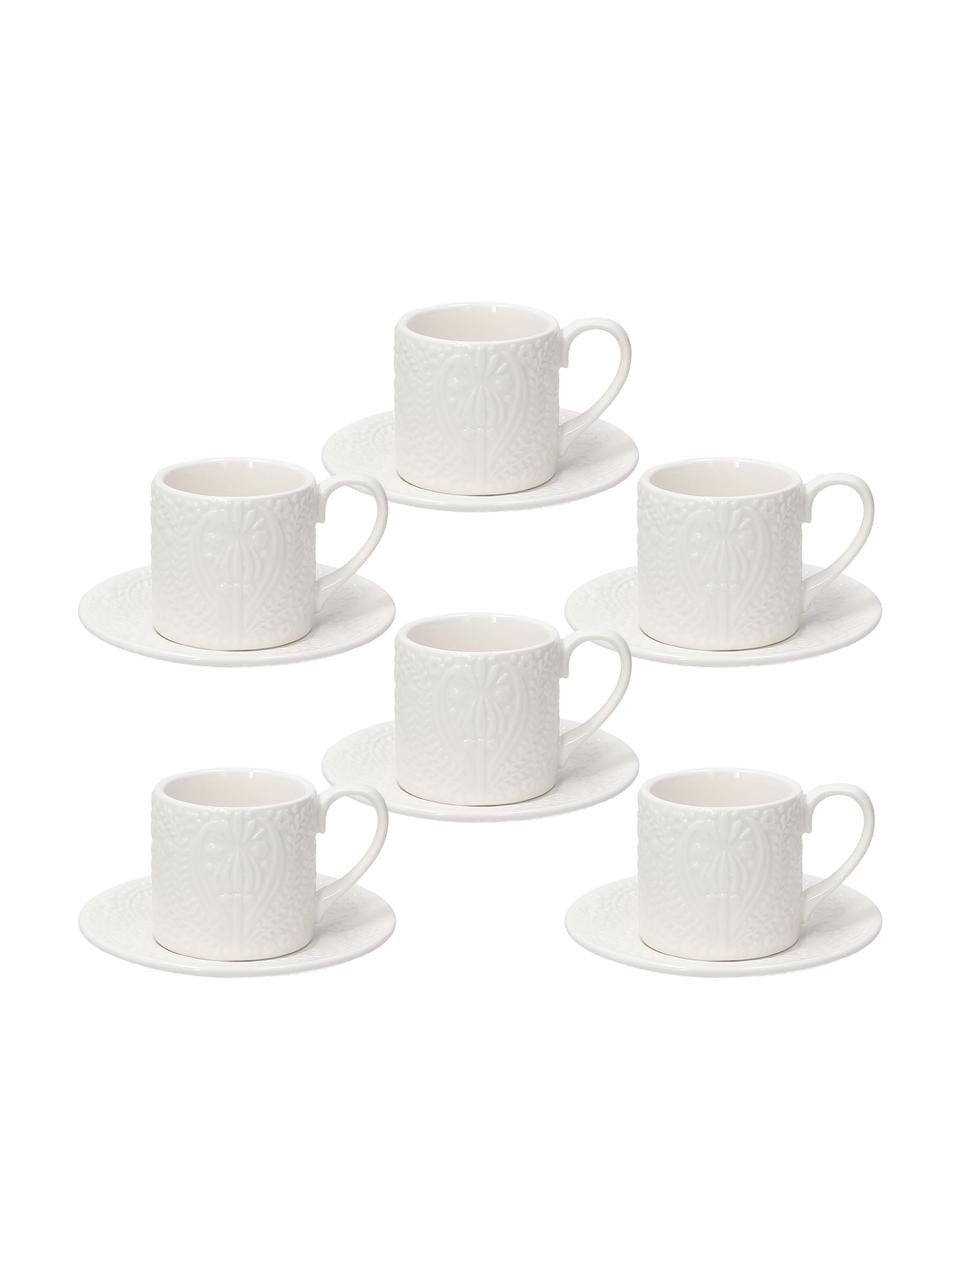 Tazza da espresso in porcellana con piattini con ornamento in rilievo Ornament 6 pz, Porcellana, Bianco, Ø 6 x Alt. 4 cm